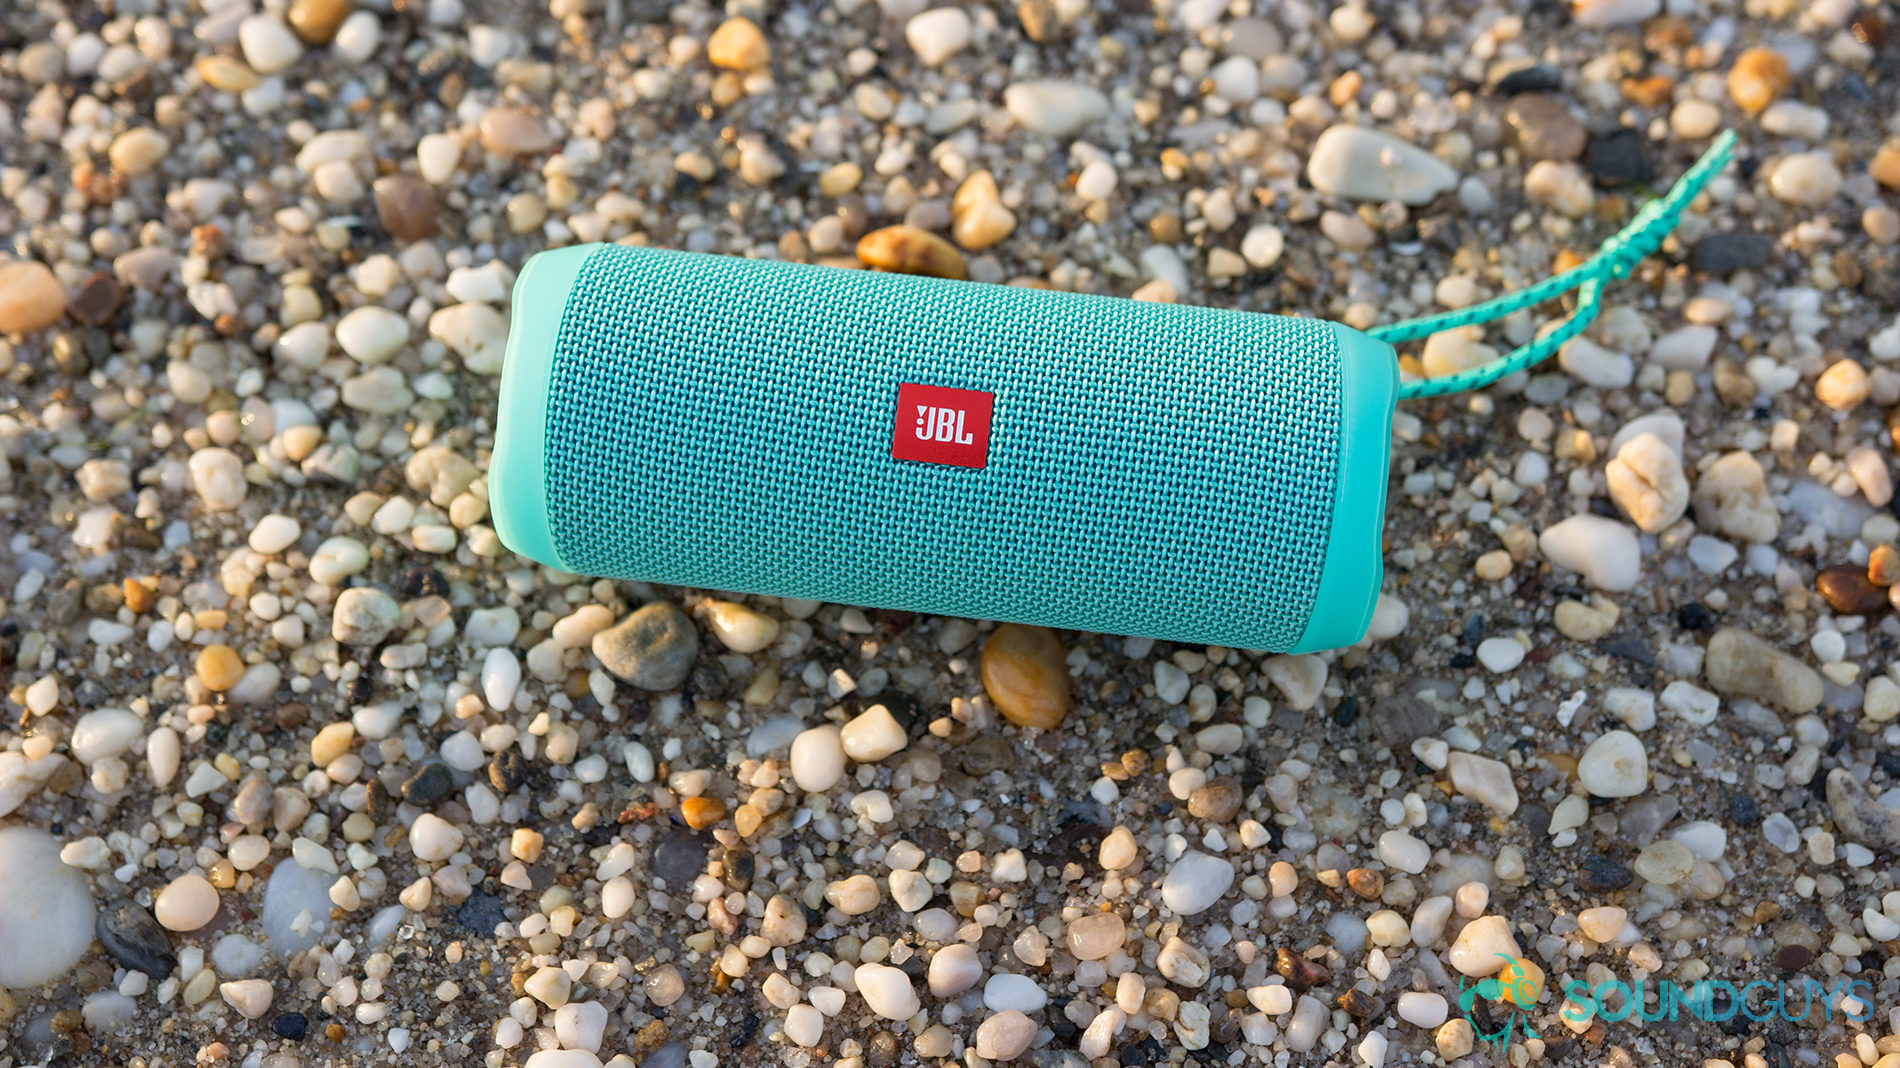 The JBL Flip 4 Bluetooth speaker on a rocky beach.